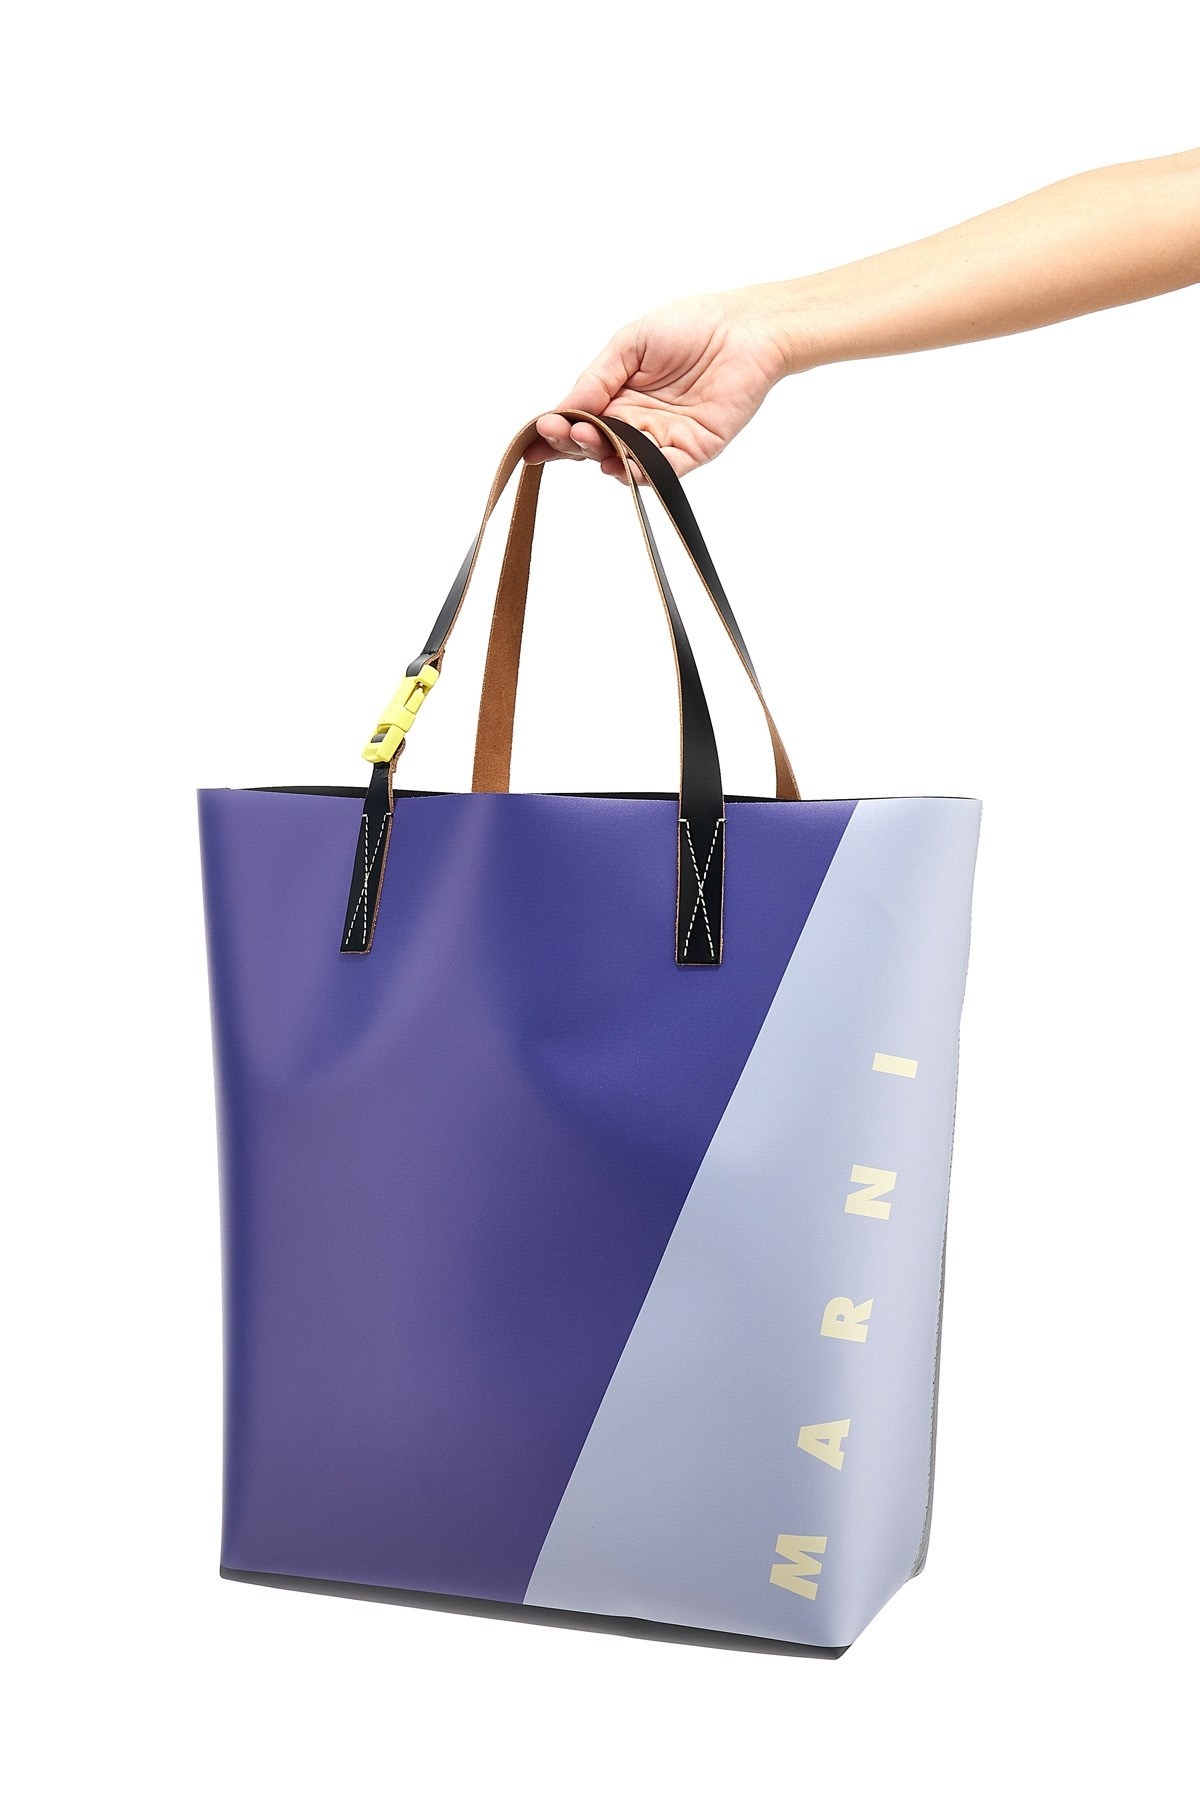 Logo shopping bag - 2